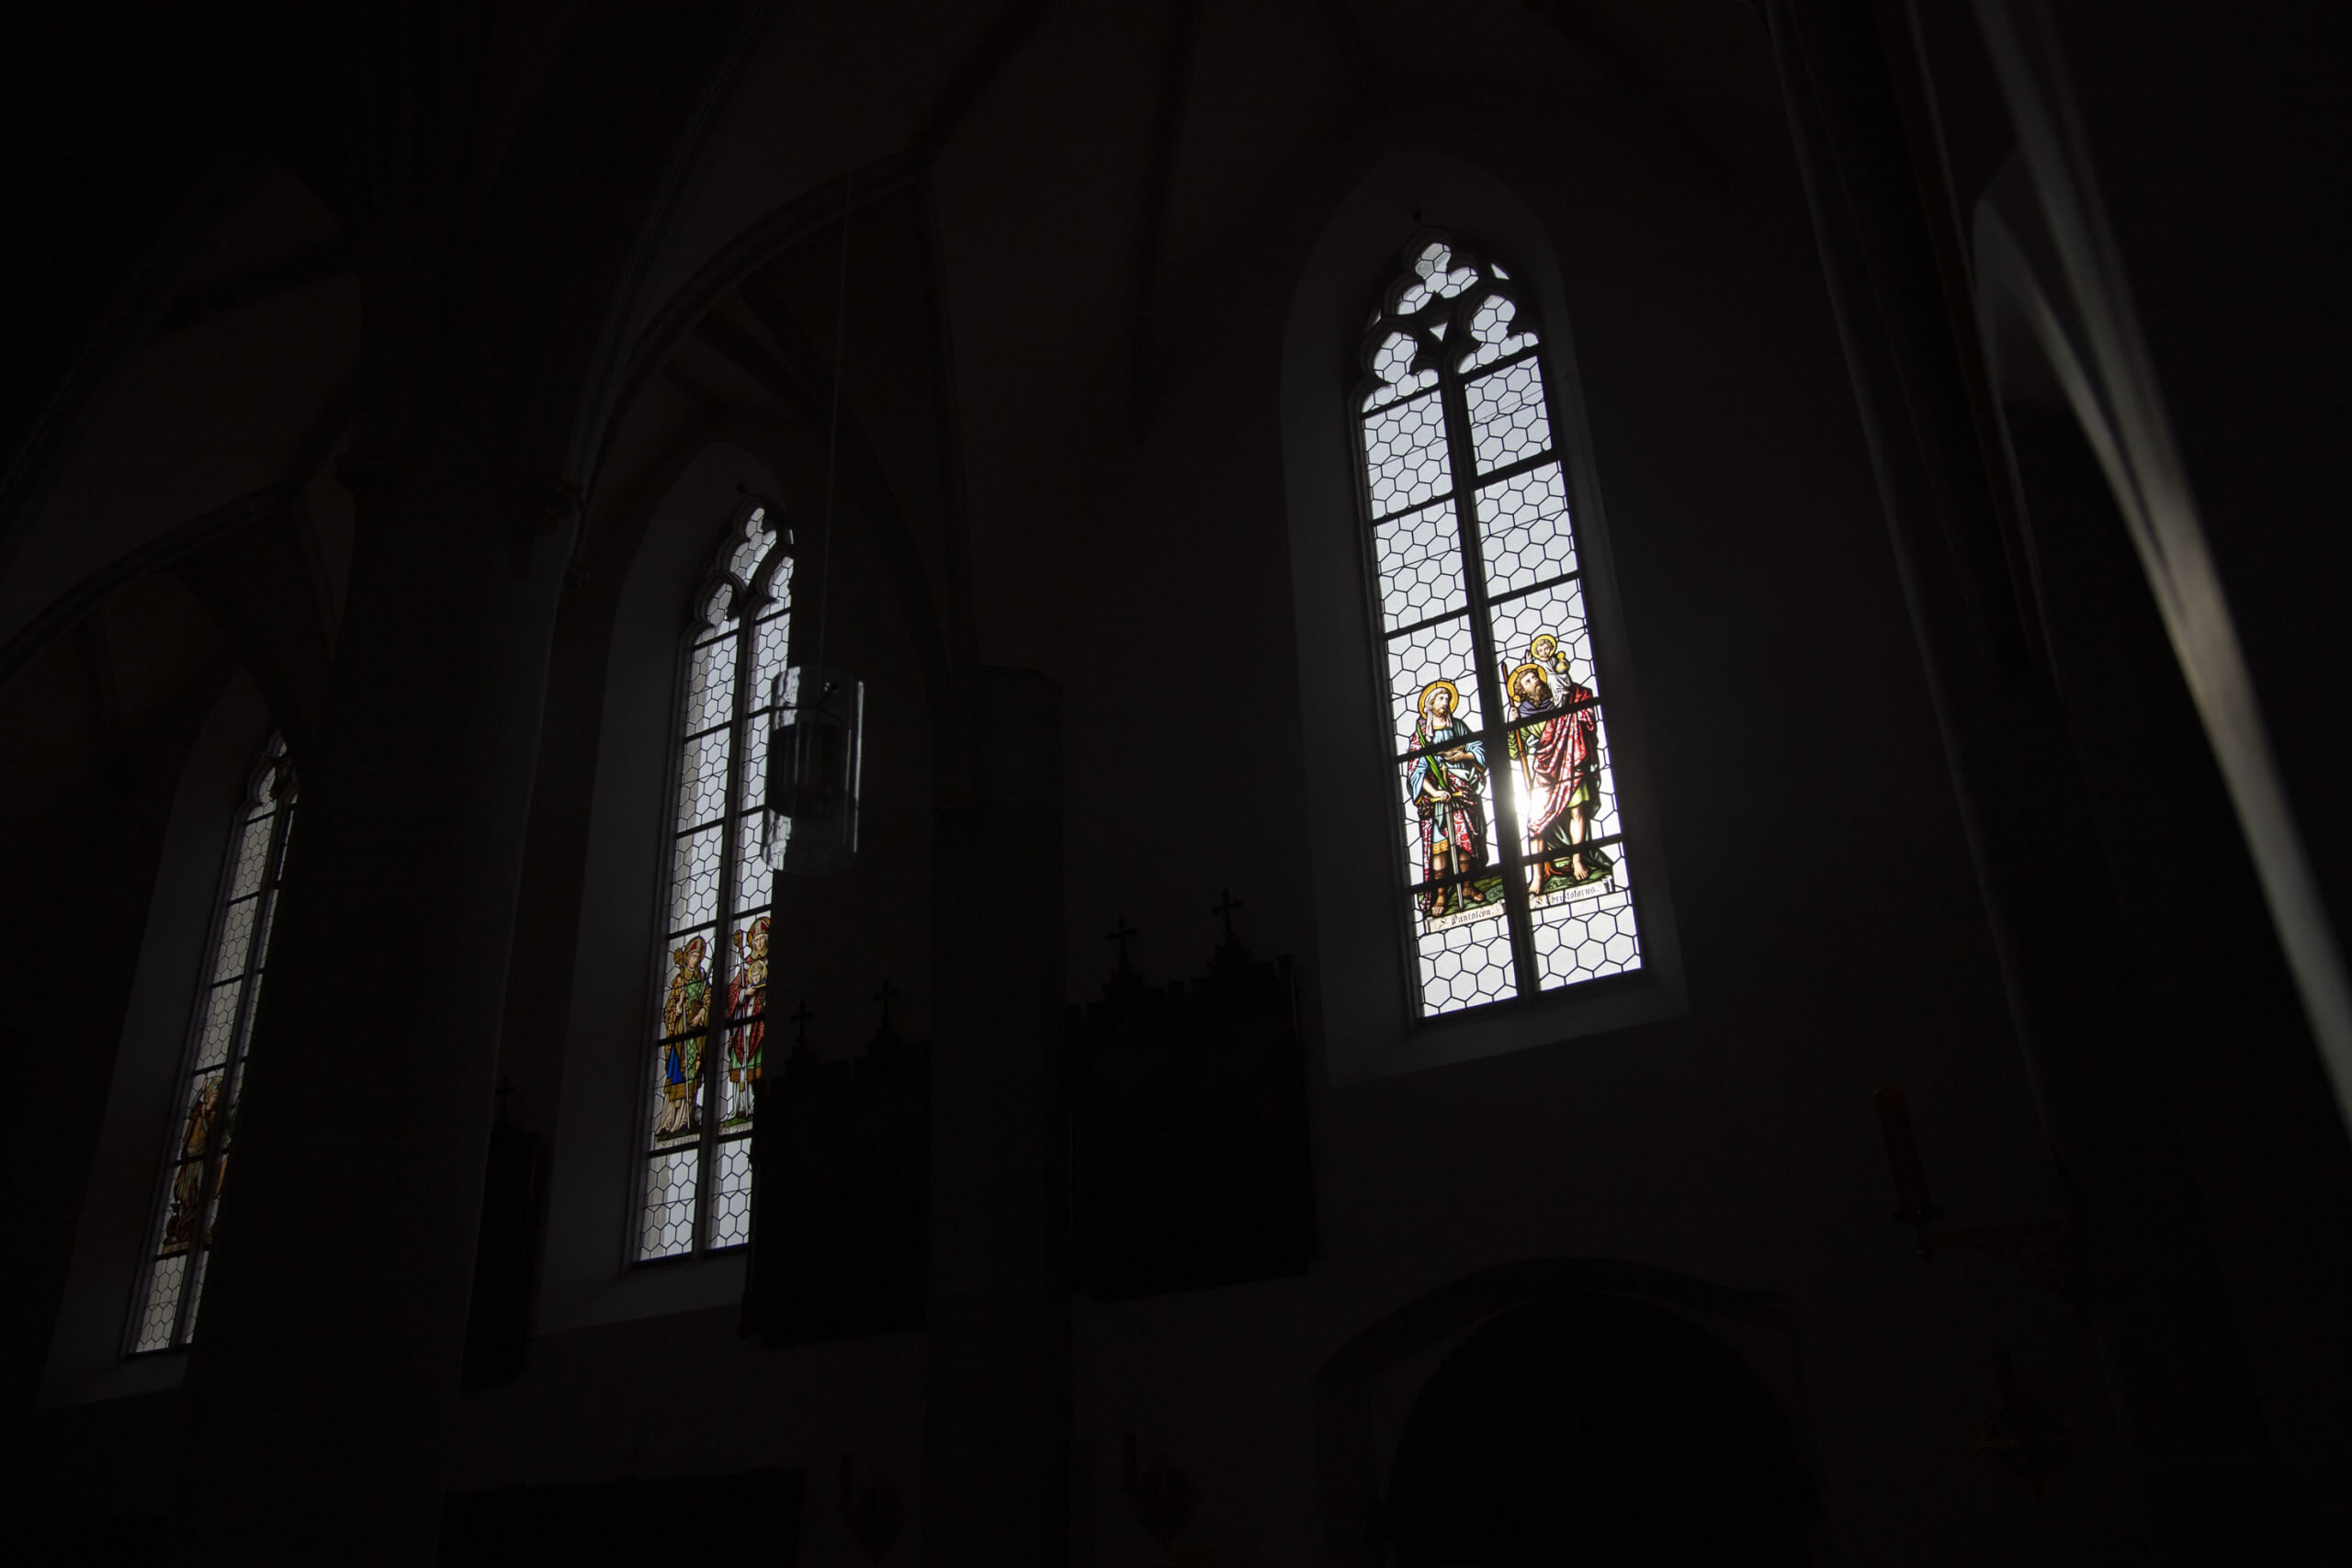 Licht fällt durch bunte Kirchenfenster ins Dunkel eines Kirchenschiffs. Foto: Ivo Mayr / Correctiv